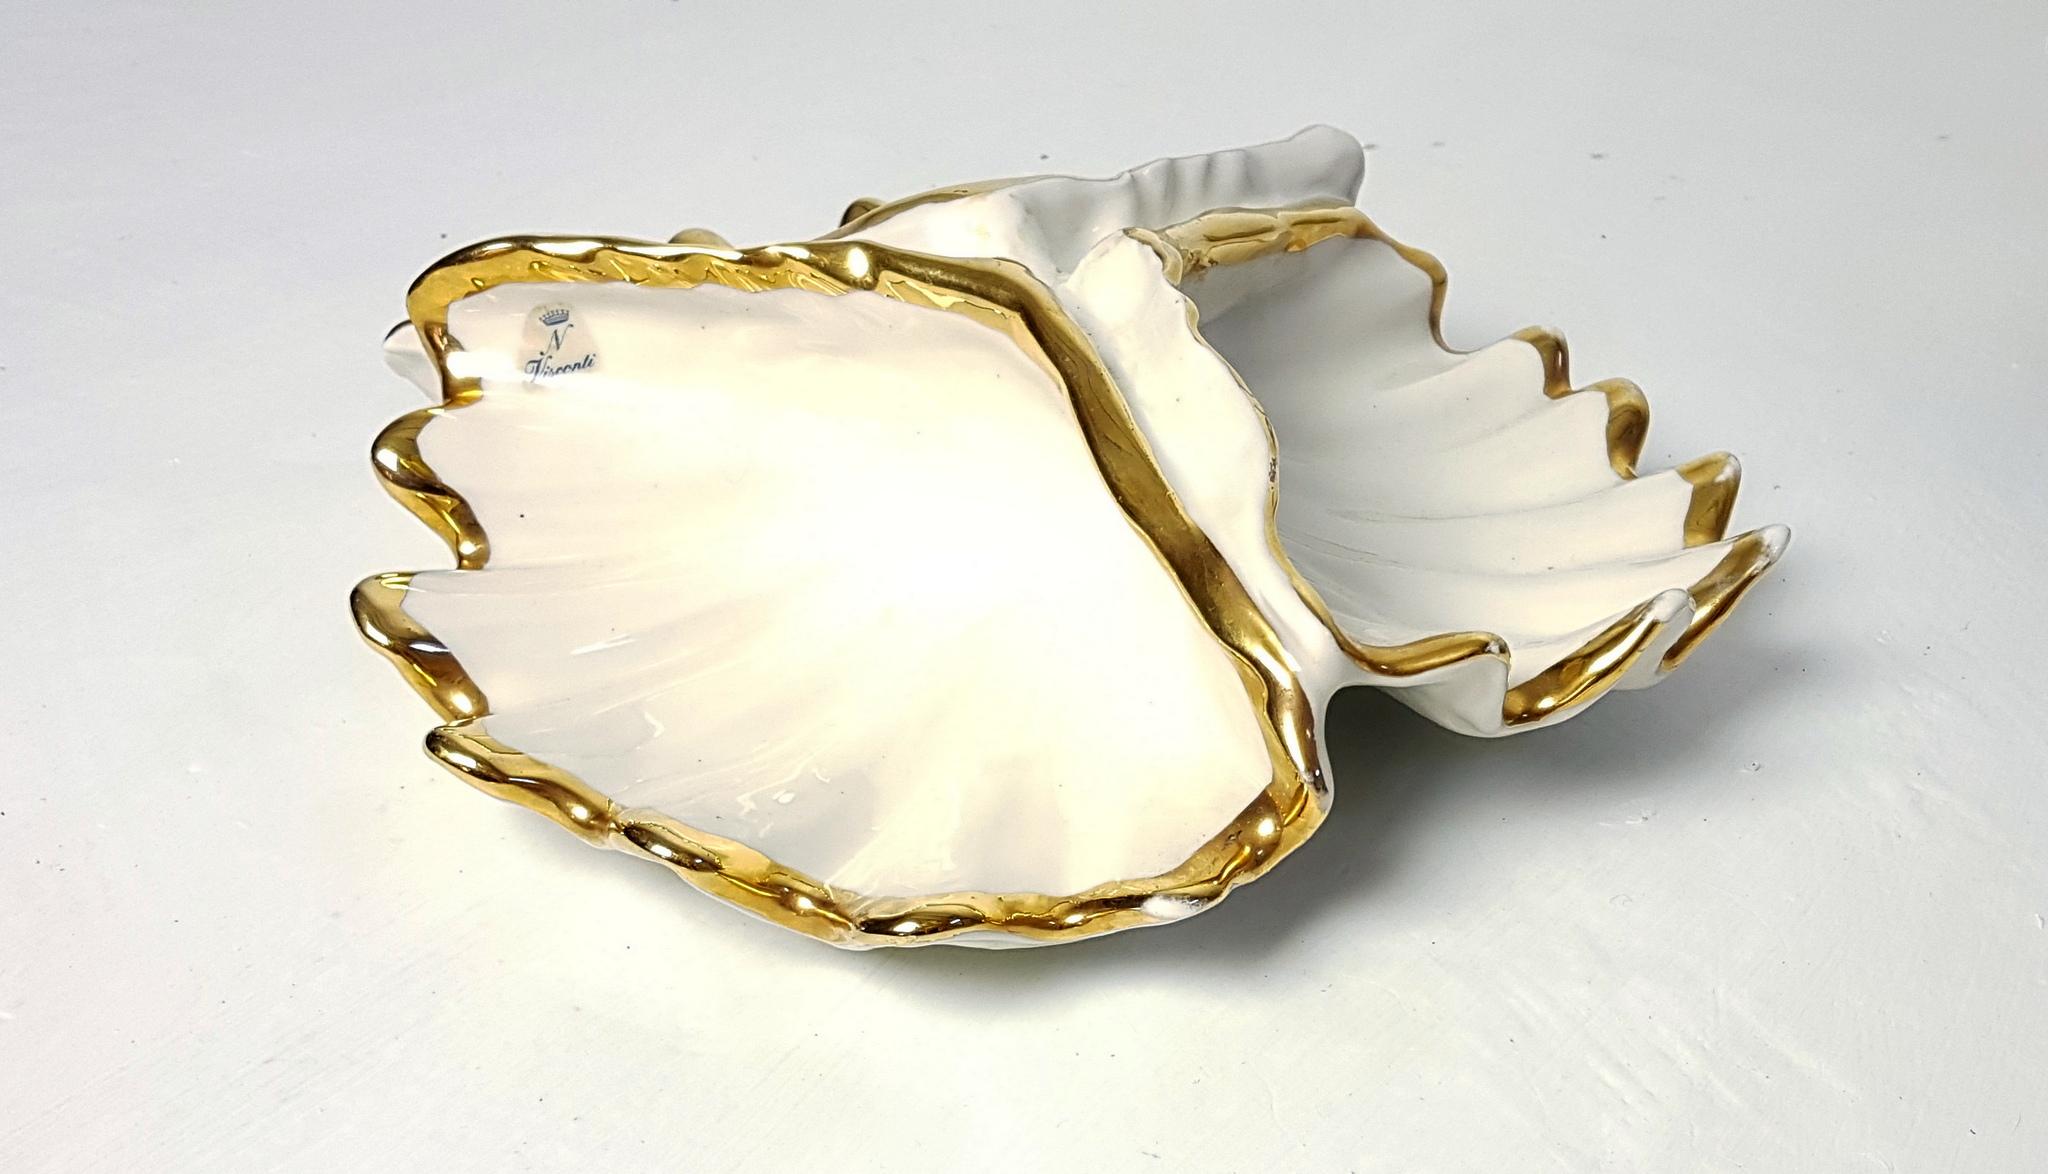 Un bol de Capodimonte en porcelaine blanc ivoire divisé en trois sections avec des bords dorés. Marqué de l'autocollant Visconti et du N couronné. Parfait pour différents encas ou bijoux.
Pas d'écaillage.